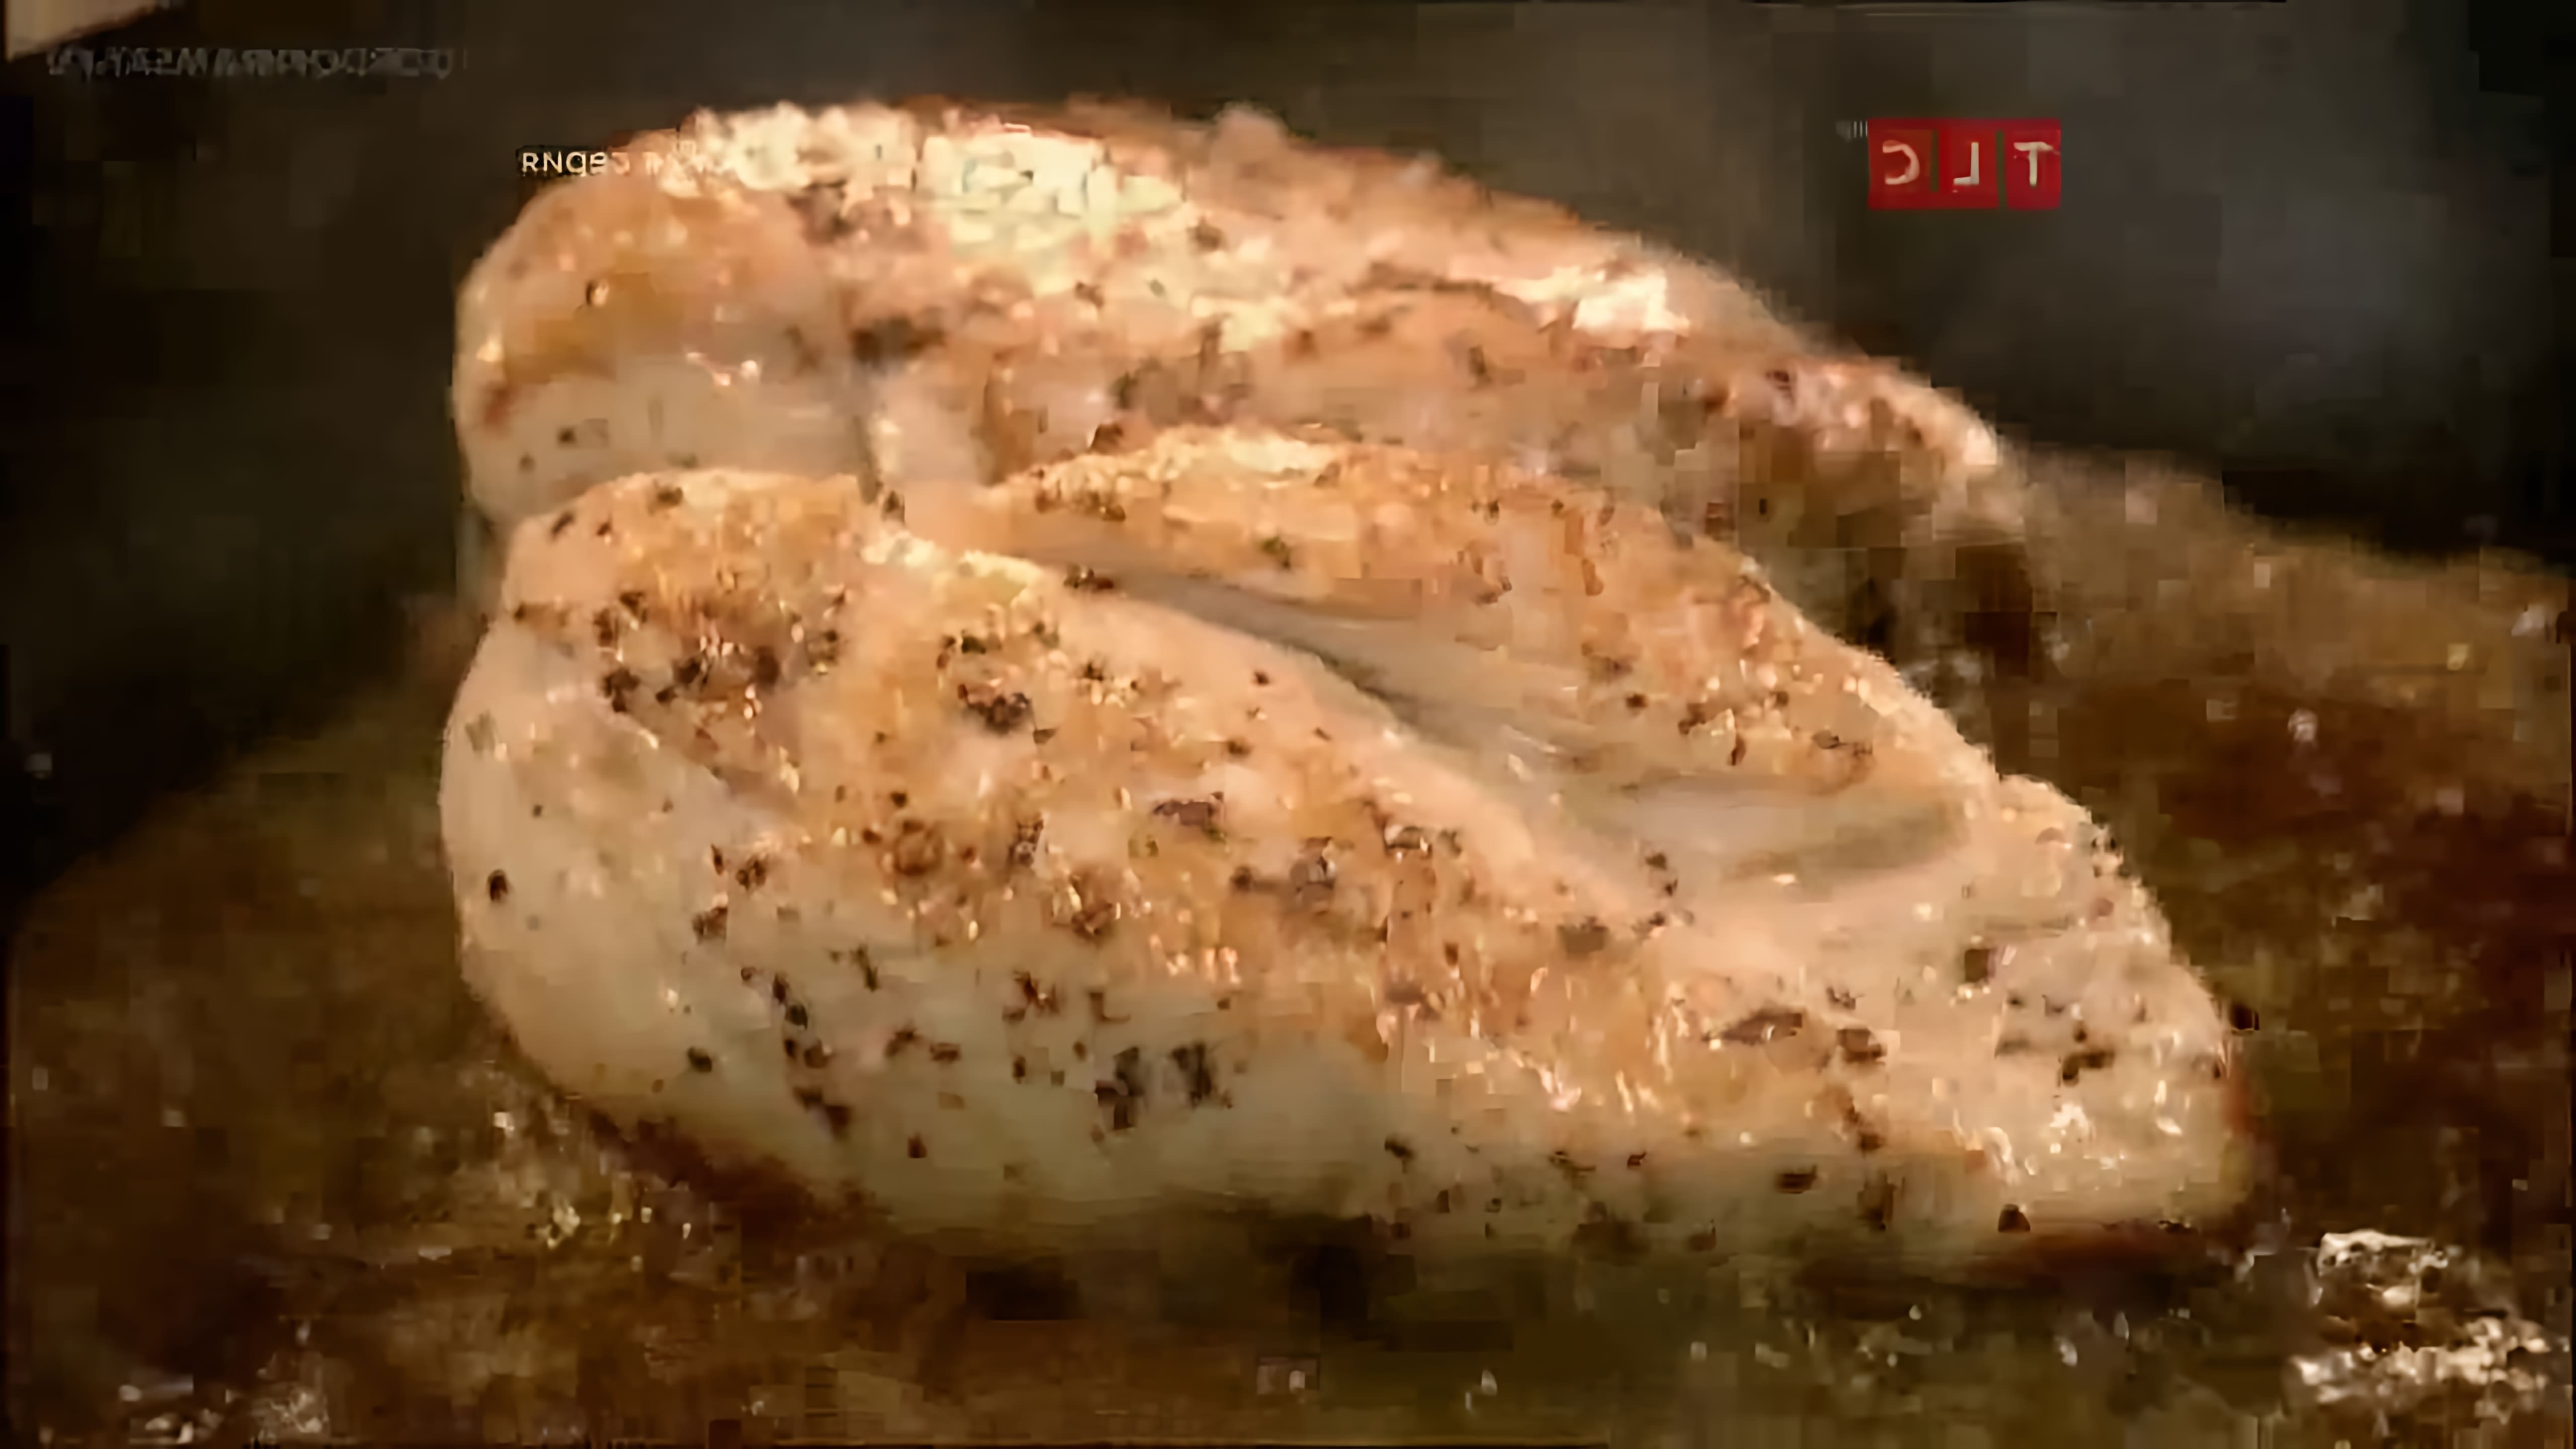 Видео посвящено рецепту Гордона Рамзи приготовления куриной грудки